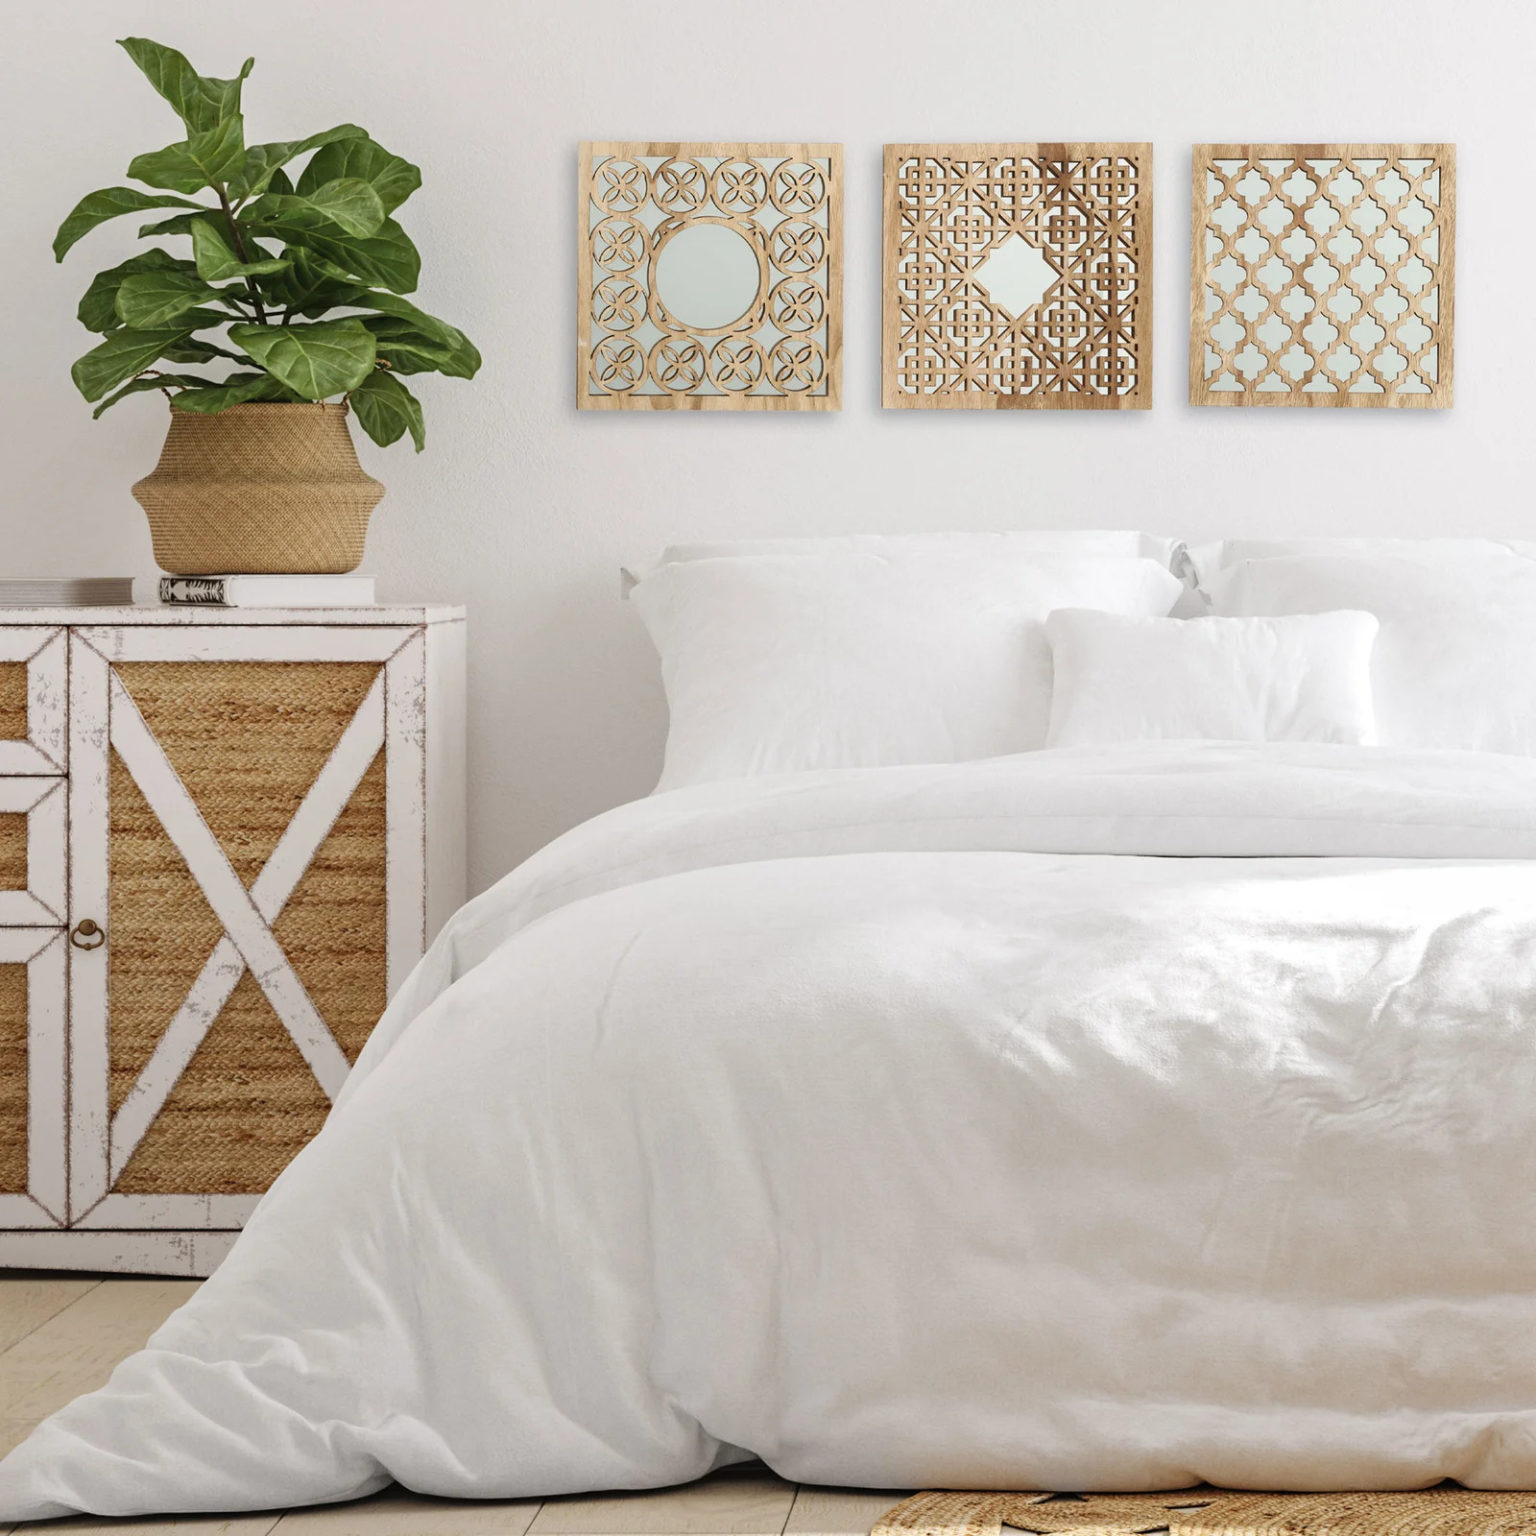 Với sự hiện diện của bộ gương trang trí, bức tường trắng đầu giường không còn đơn điệu.